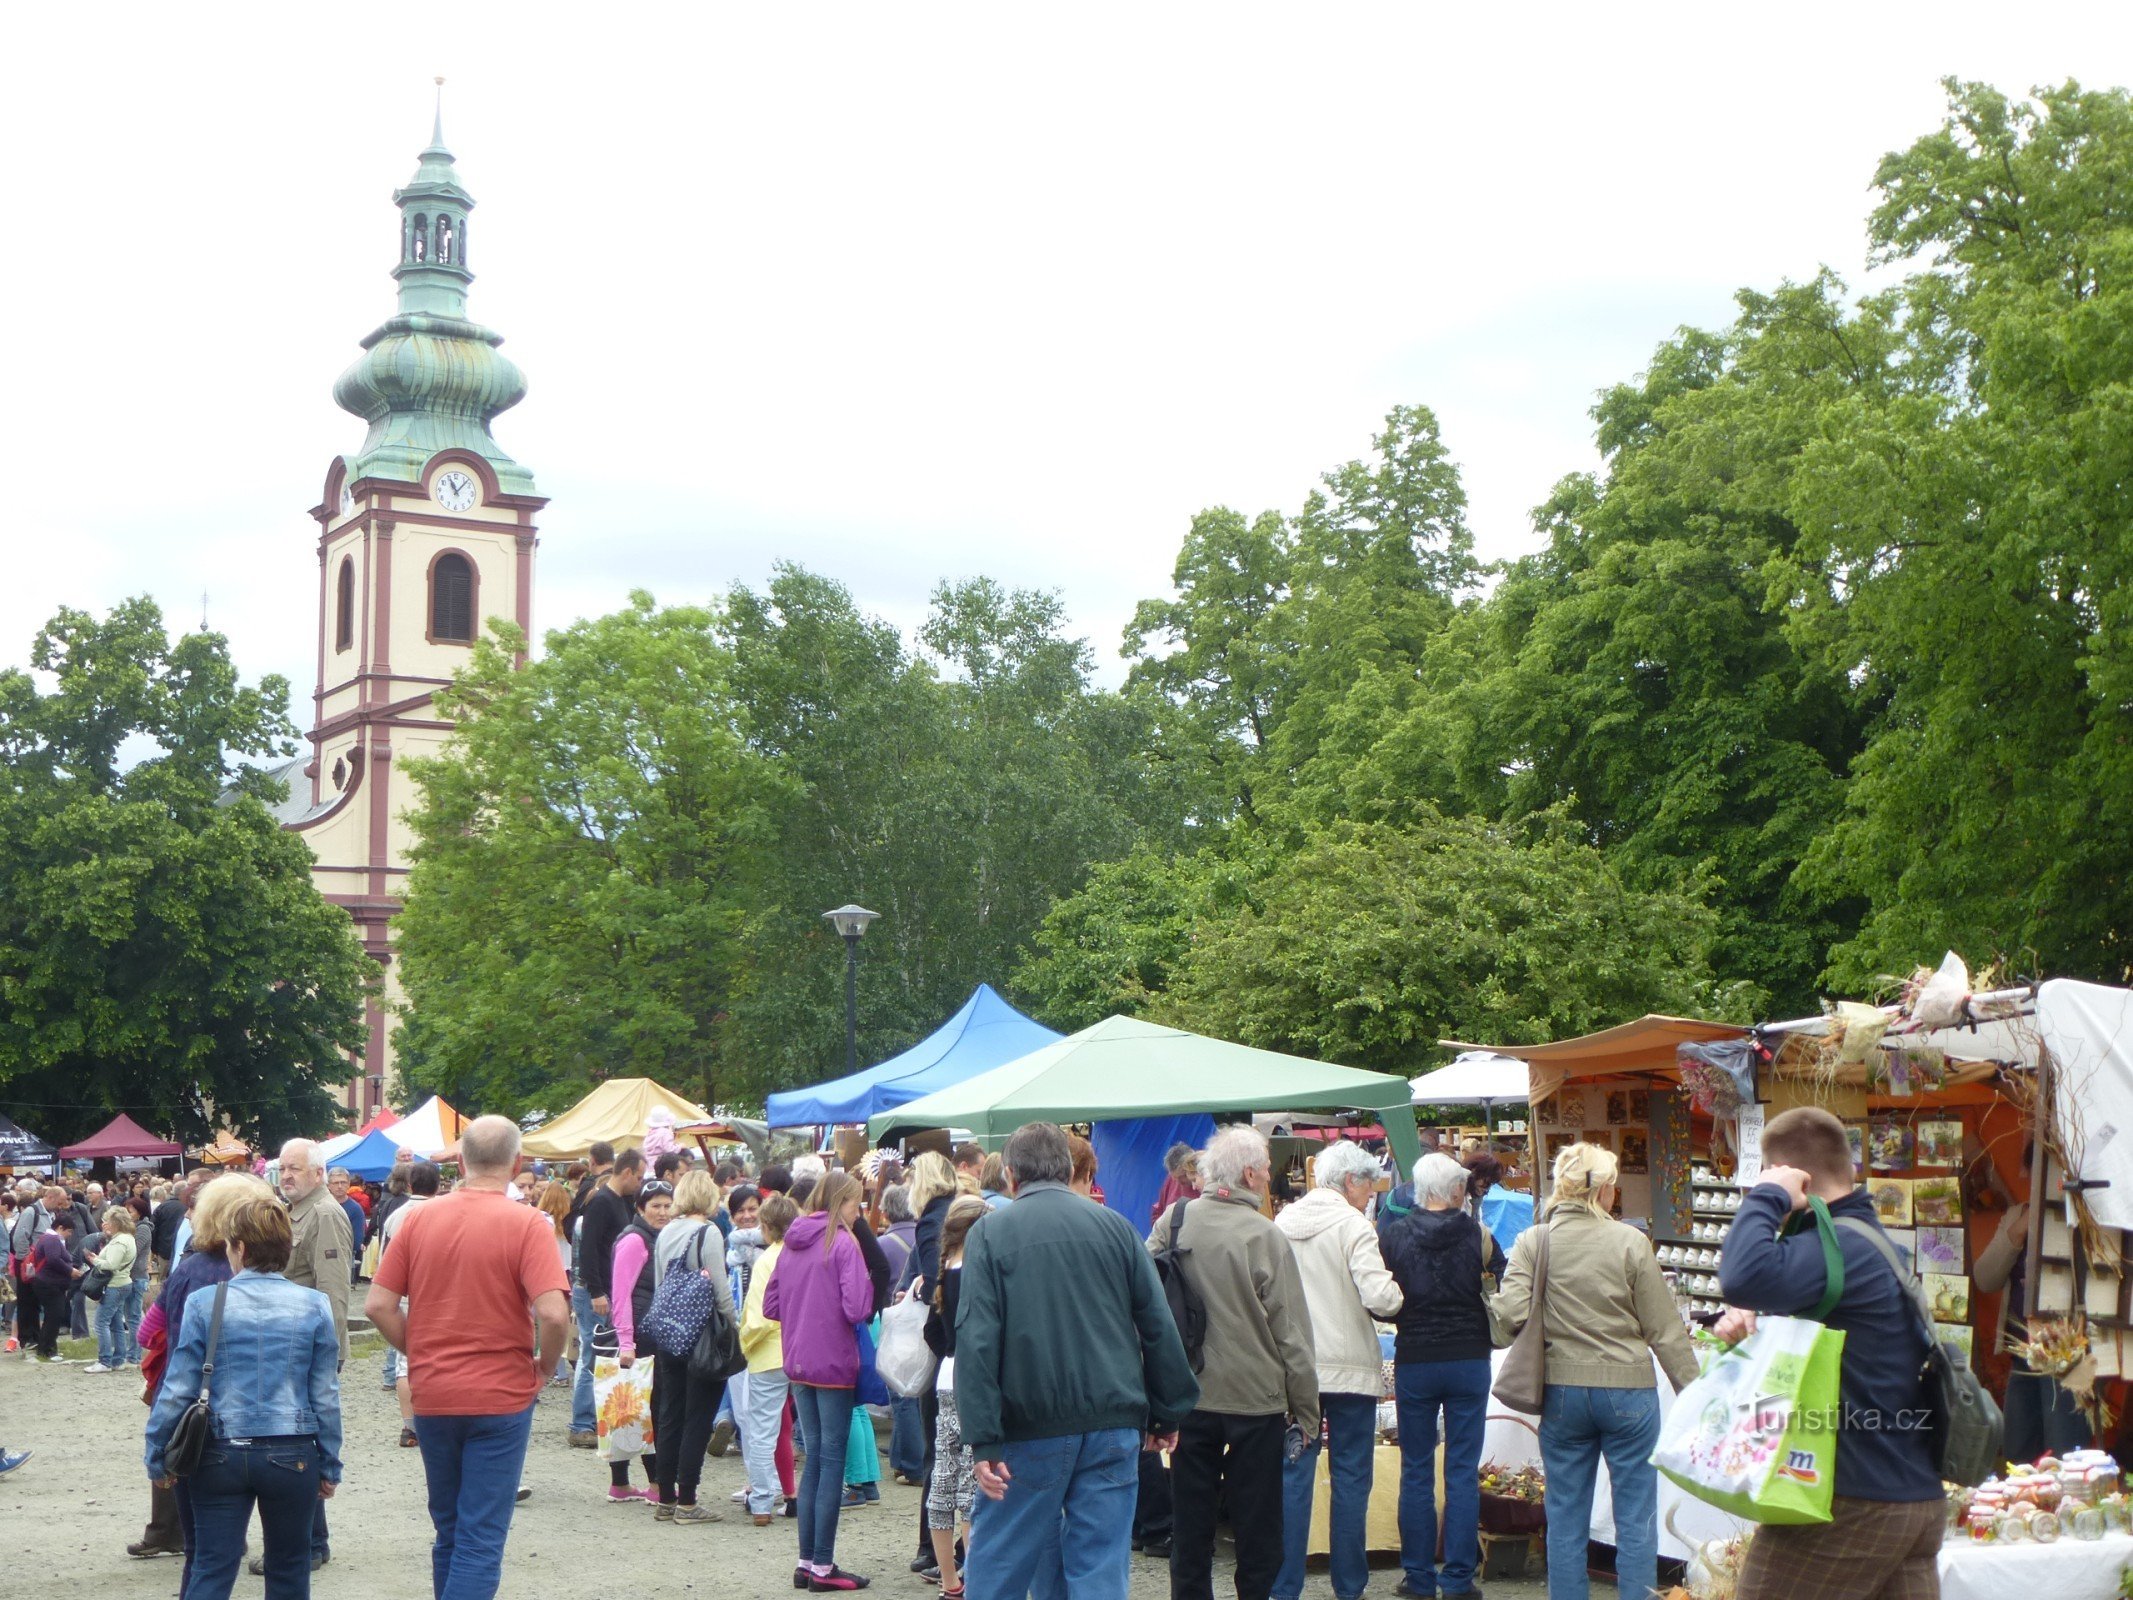 Traditionele keramiekdag - Náměstí Smiřické, op de achtergrond de kerk van St. Beschermengelen